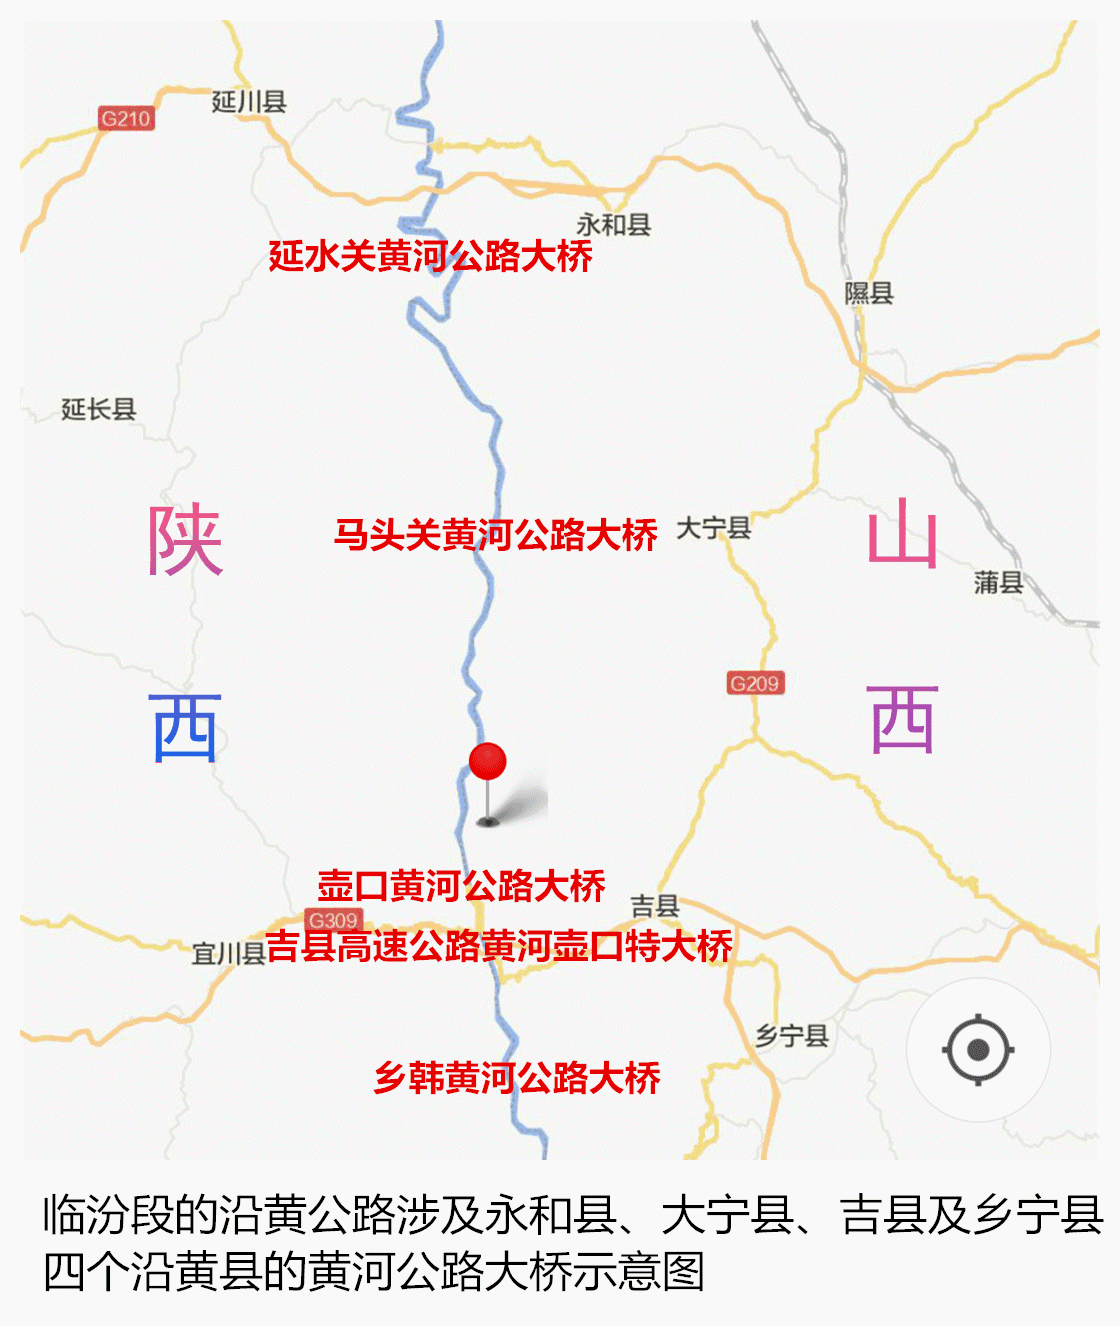 旅游 正文  山西·临汾旅游景点分布图 临汾段的沿黄公路涉及永和县图片